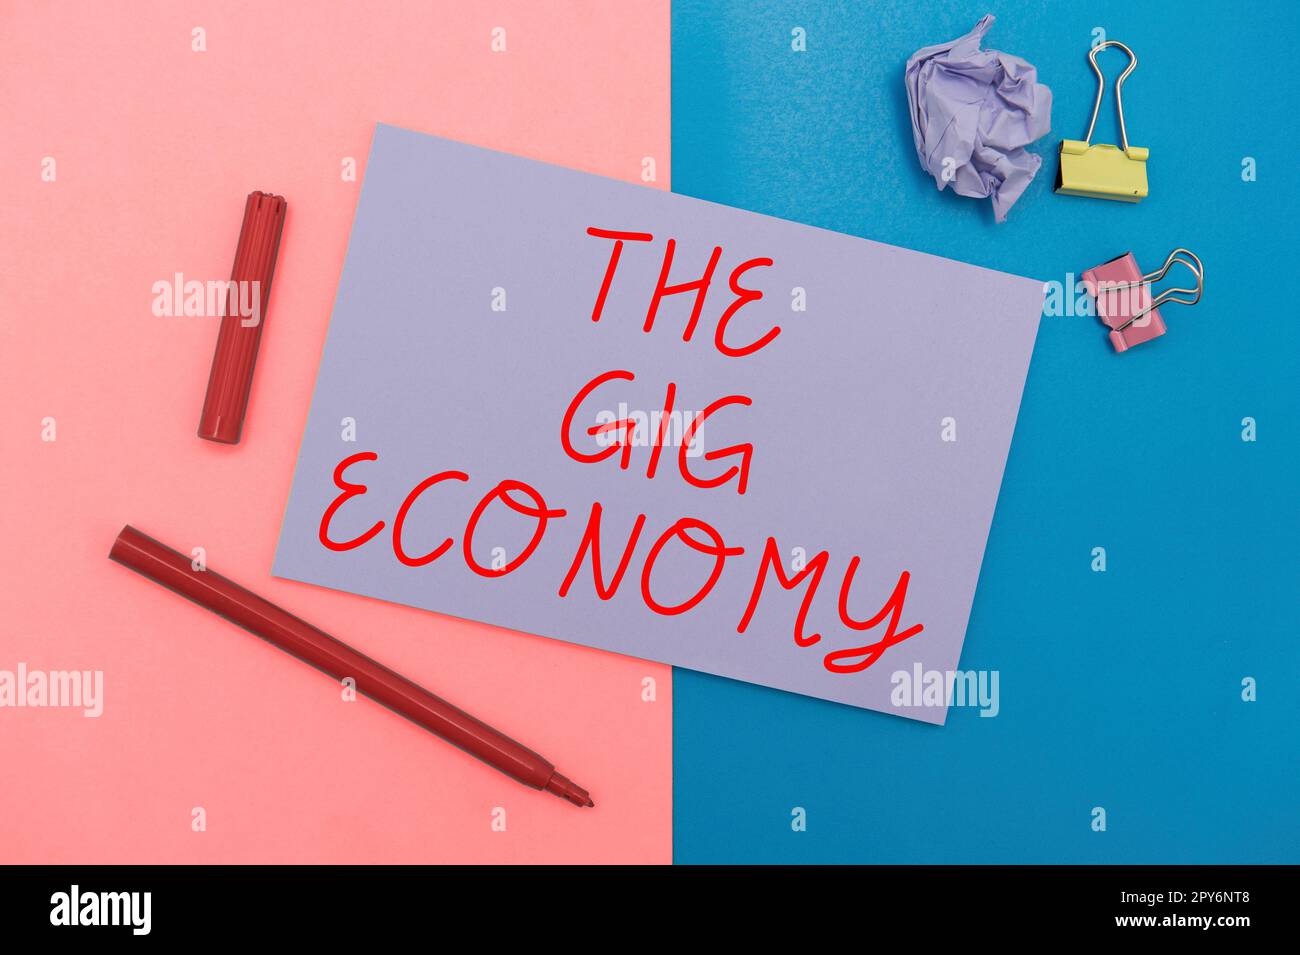 Signe écrit à la main The Gig Economy. Photo conceptuelle marché des contrats à court terme travail indépendant temporaire Banque D'Images